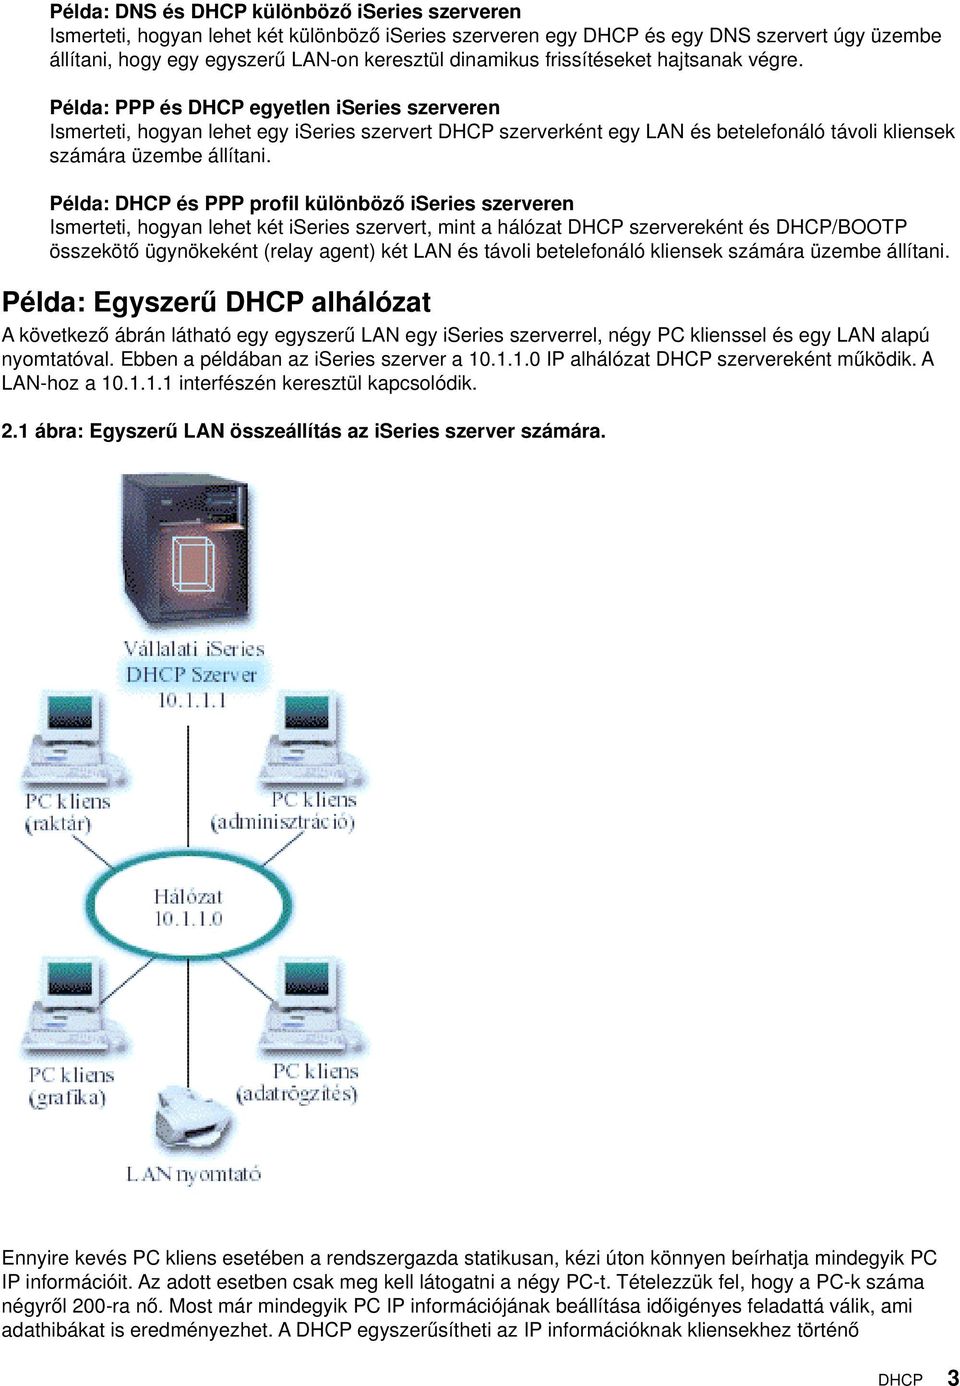 Példa: PPP és DHCP egyetlen iseries szerveren Ismerteti, hogyan lehet egy iseries szervert DHCP szerverként egy LAN és betelefonáló távoli kliensek számára üzembe állítani.